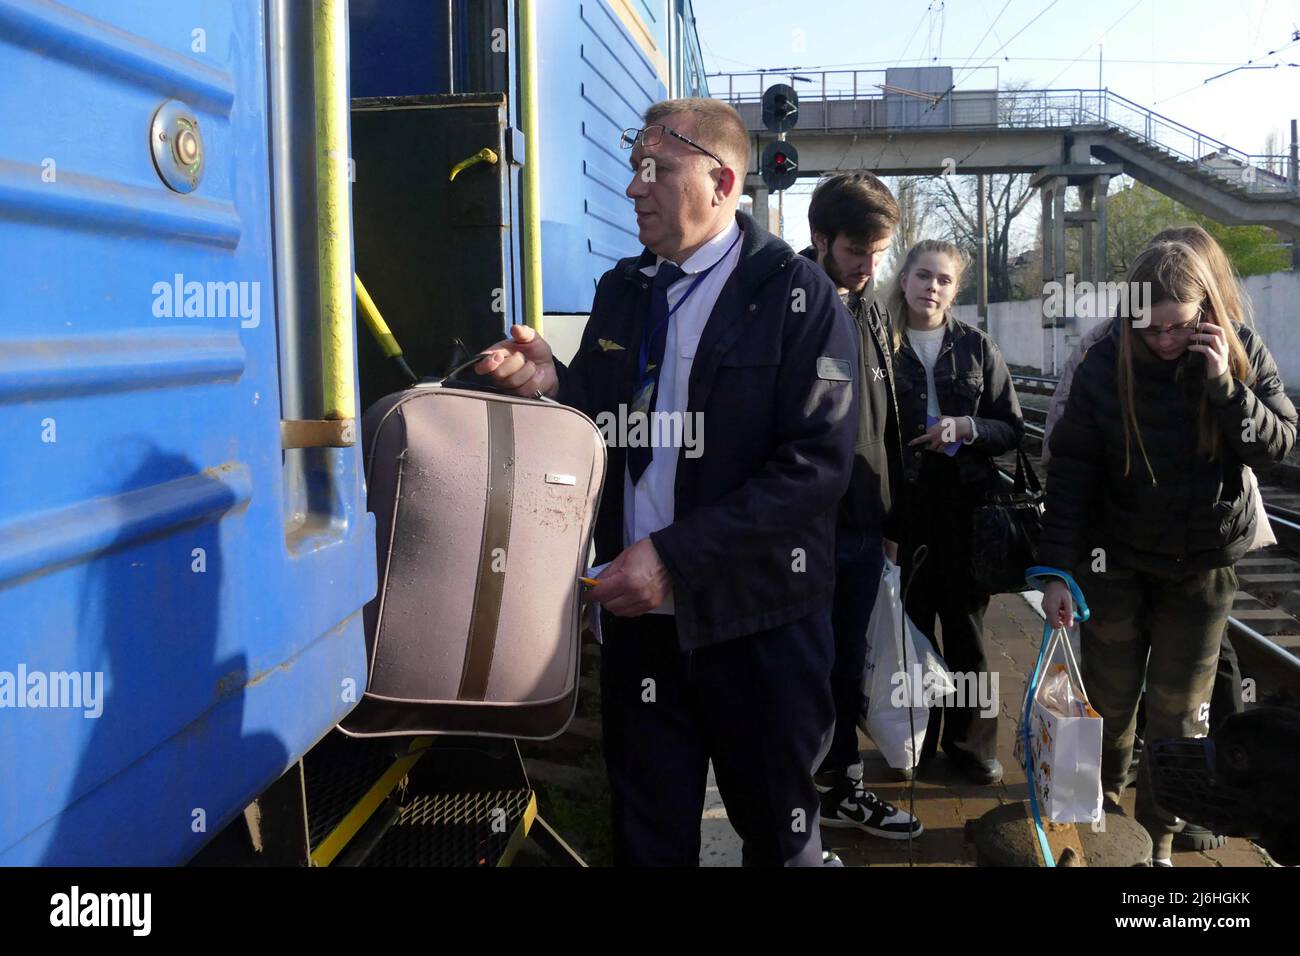 ODESA, UKRAINE - 25. APRIL 2022 - Ein Mann hilft einem Passagier mit einem Koffer vor dem Abflug eines Evakuierungszuges, der Menschen auf der Flucht bringen wird Stockfoto